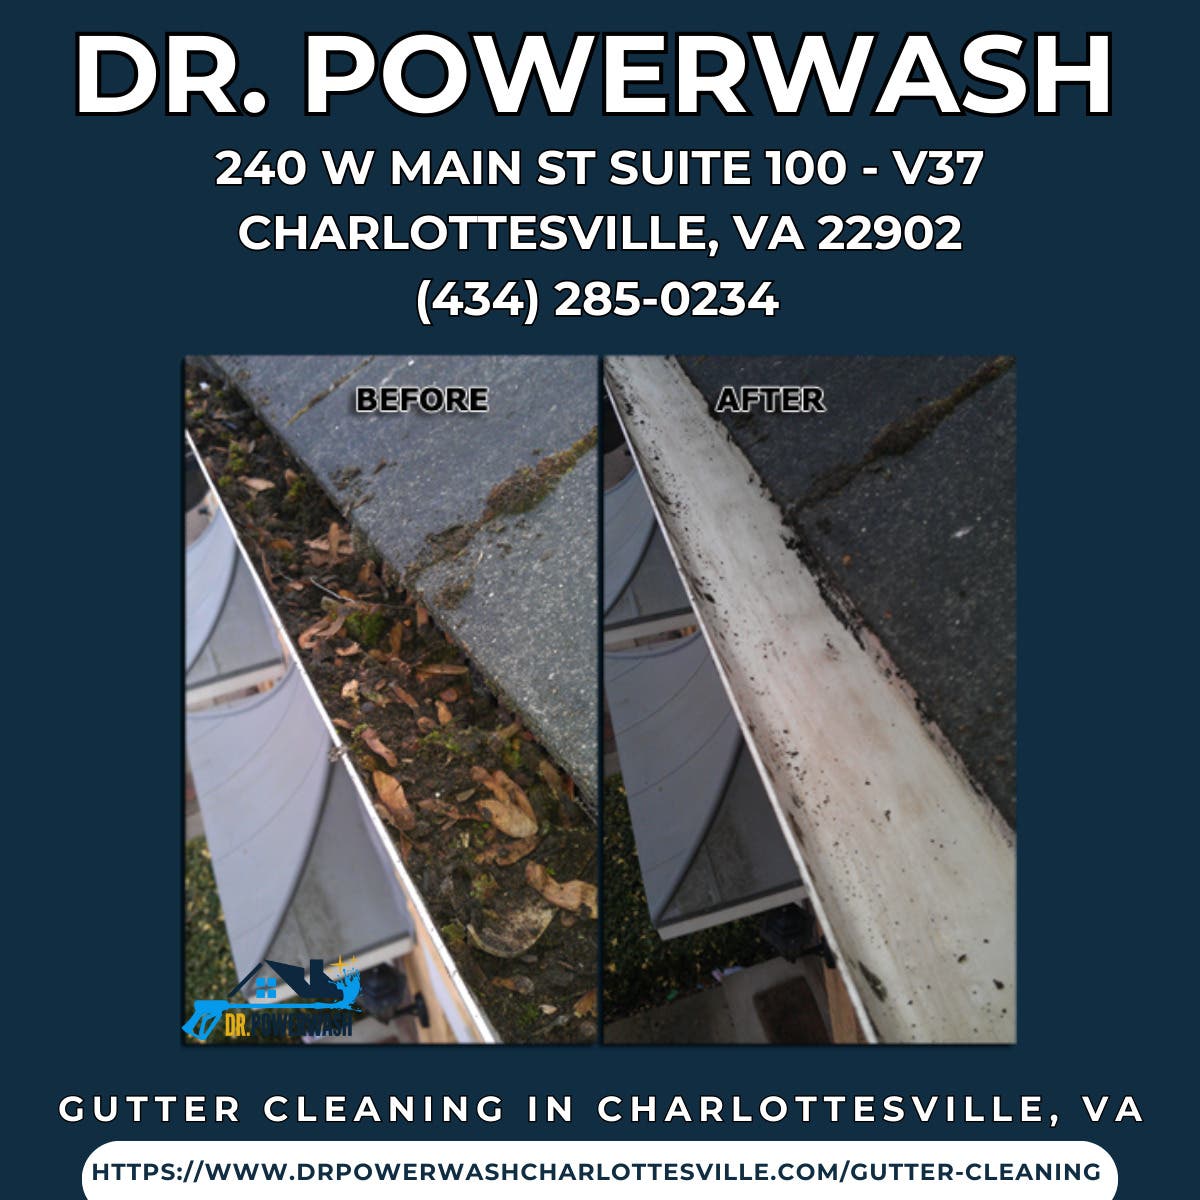 Gutter Cleaning in Charlottesville, VA - Dr. Powerwash